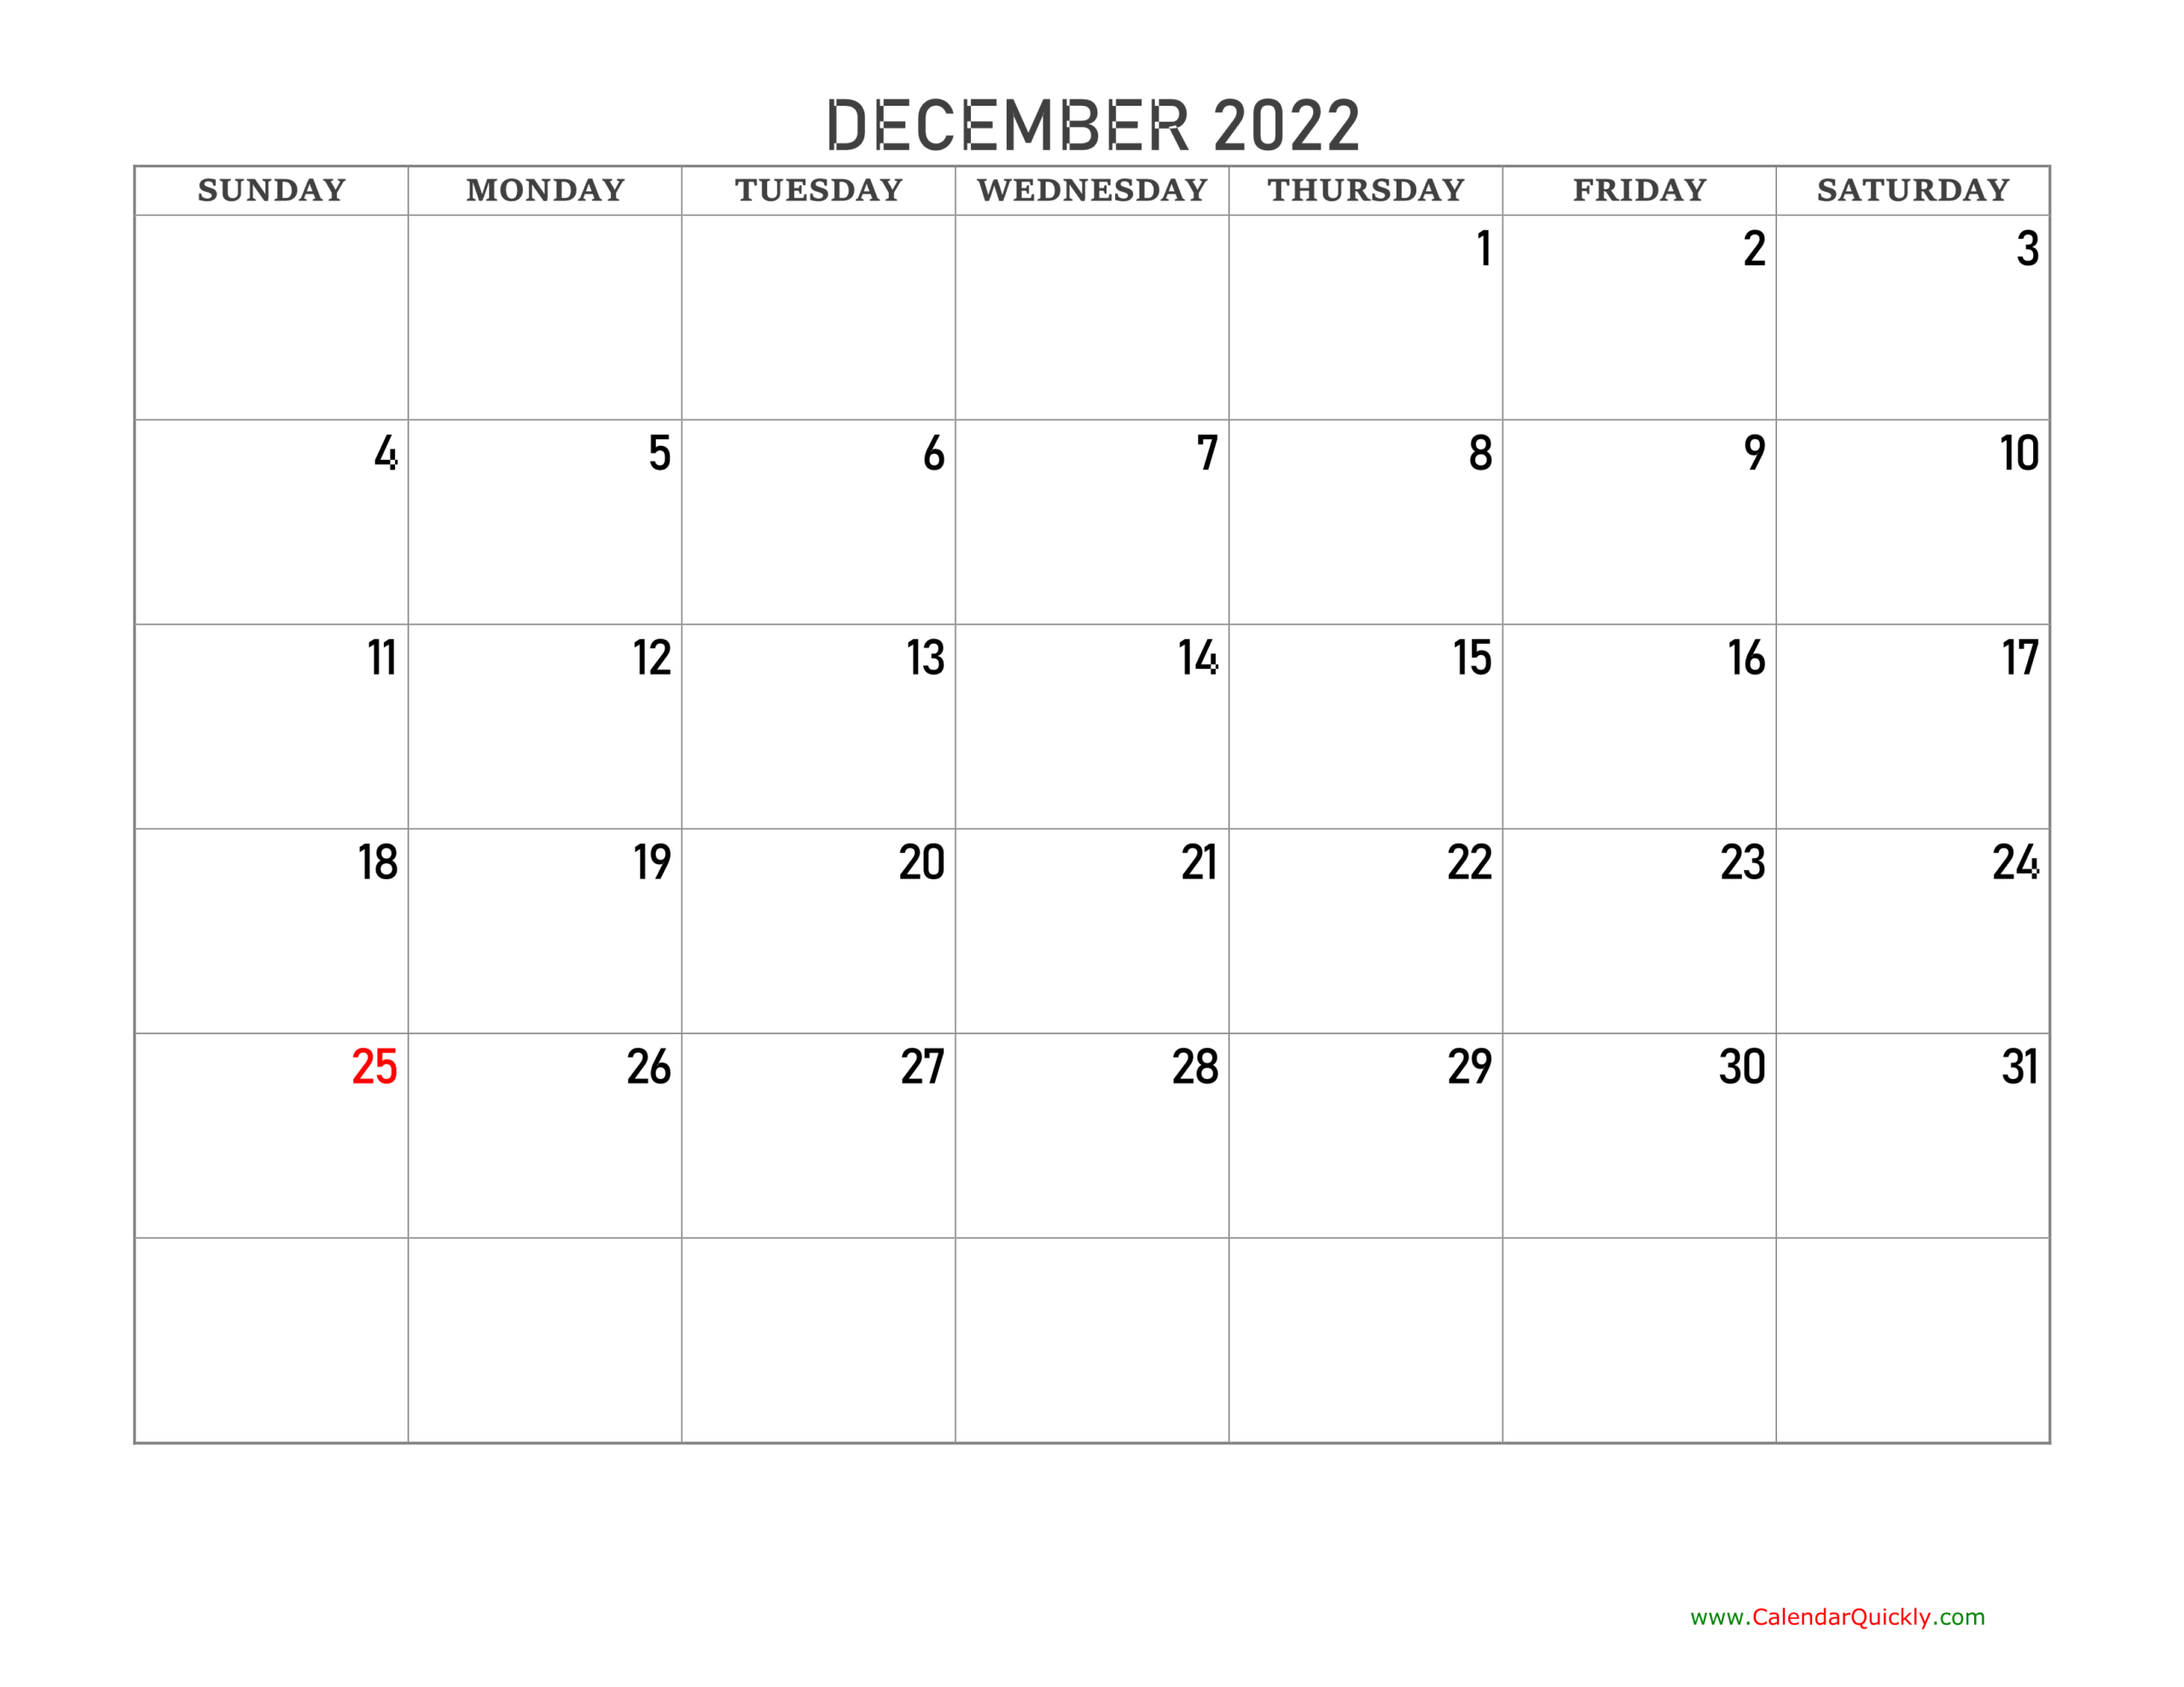 December 2022 Blank Calendar | Calendar Quickly  December 2022 Hindu Calendar